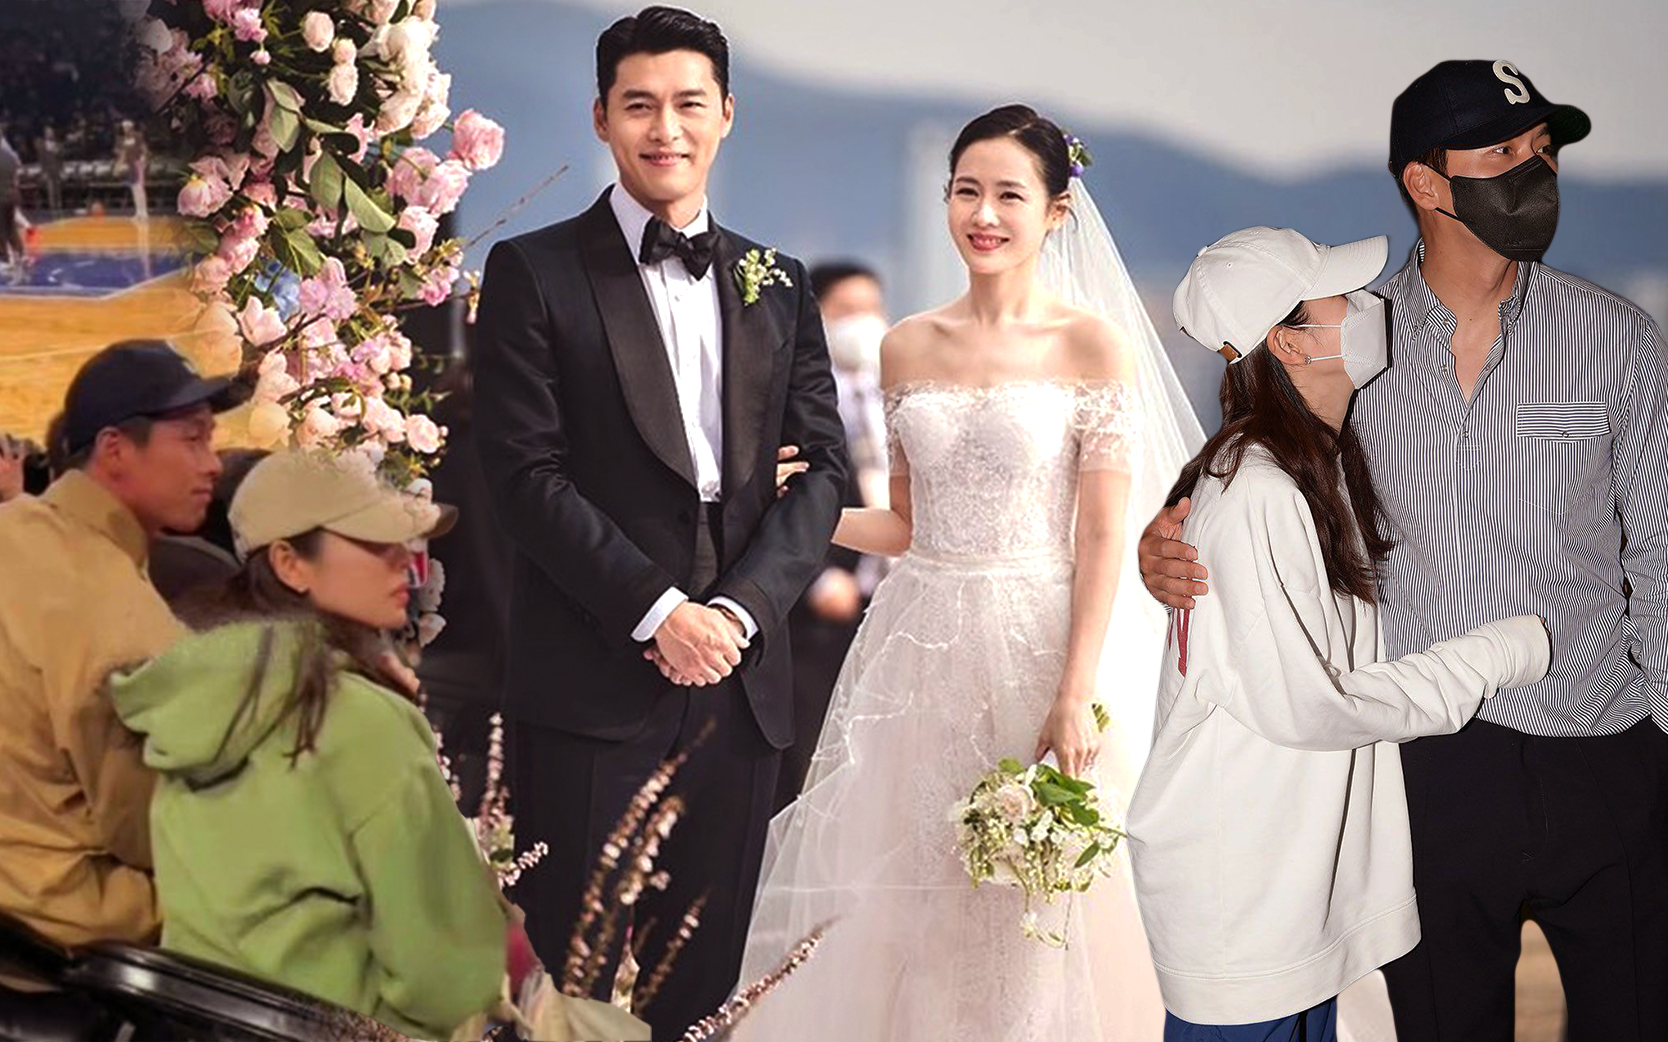 Nhìn lại đám cưới Hyun Bin - Son Ye Jin sau tròn 1 tháng: Trở thành cặp vợ chồng thế kỷ được cả thế giới săn đón, nhưng người trong cuộc liệu có thoải mái? - Ảnh 2.